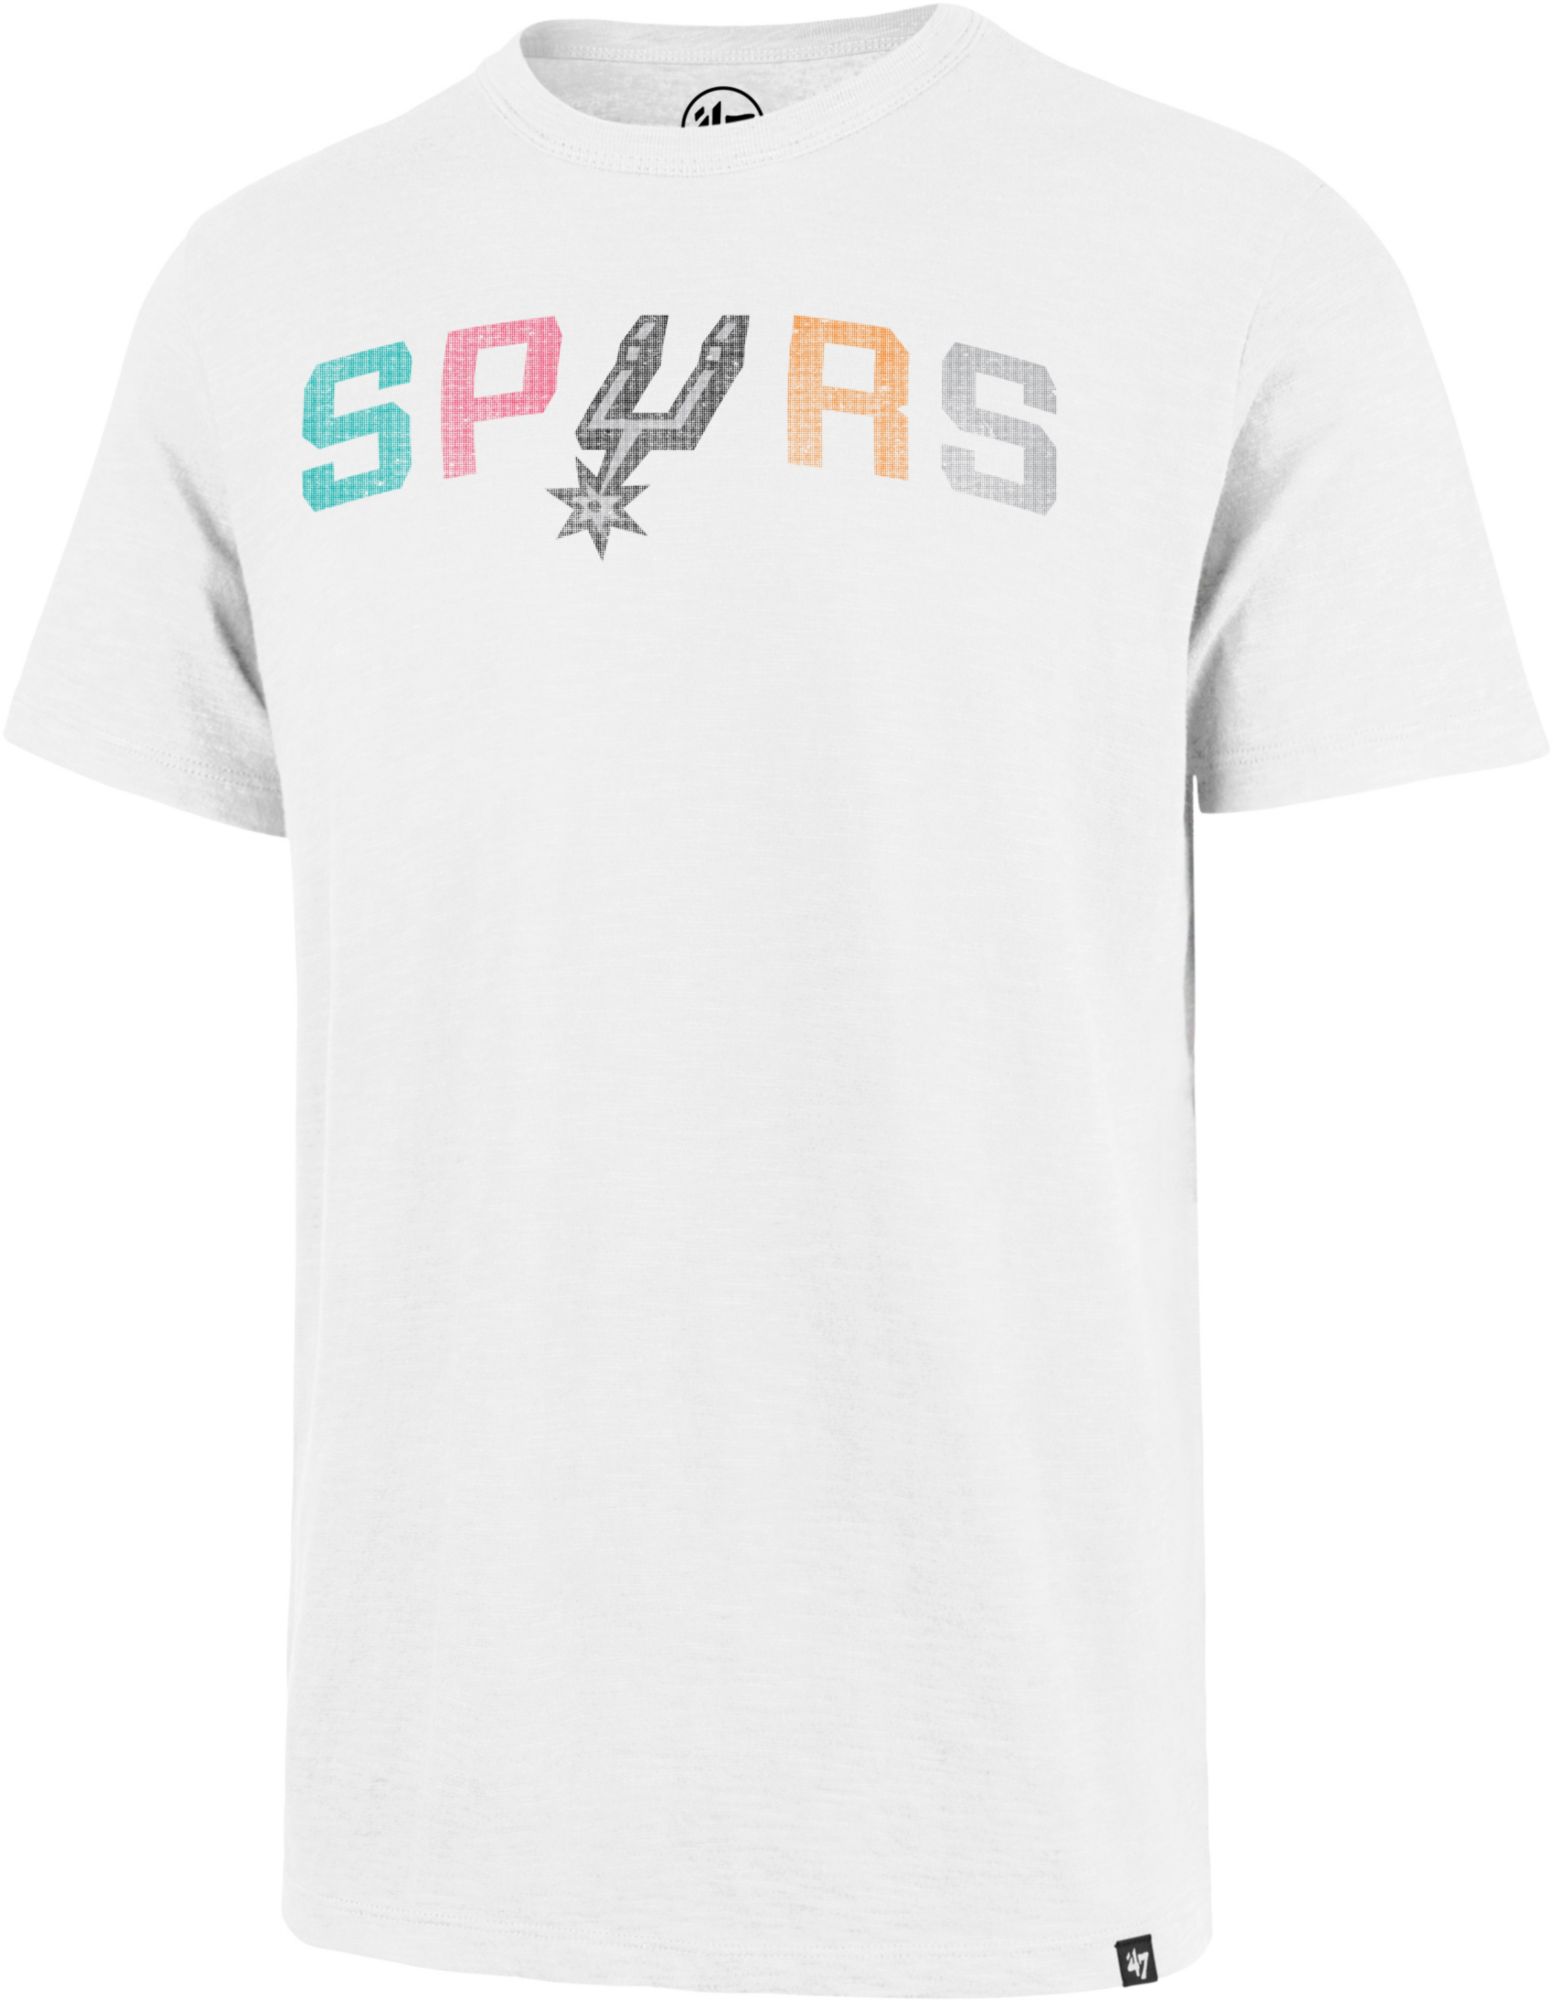  Men's Spurs Shirt